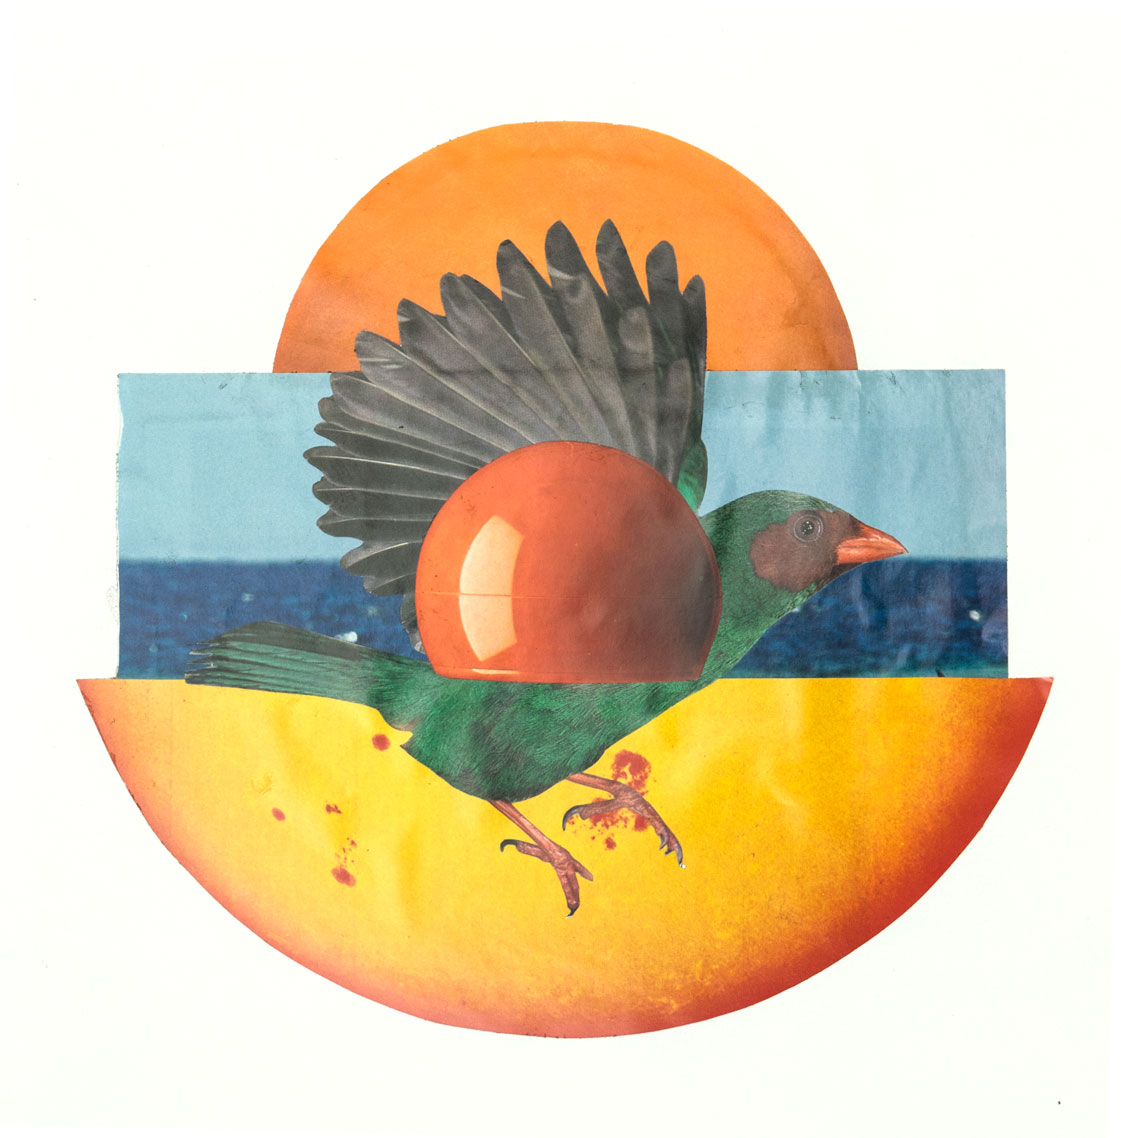  L'oiseau 21,6 x 23 cm Collage sur papier 2017 